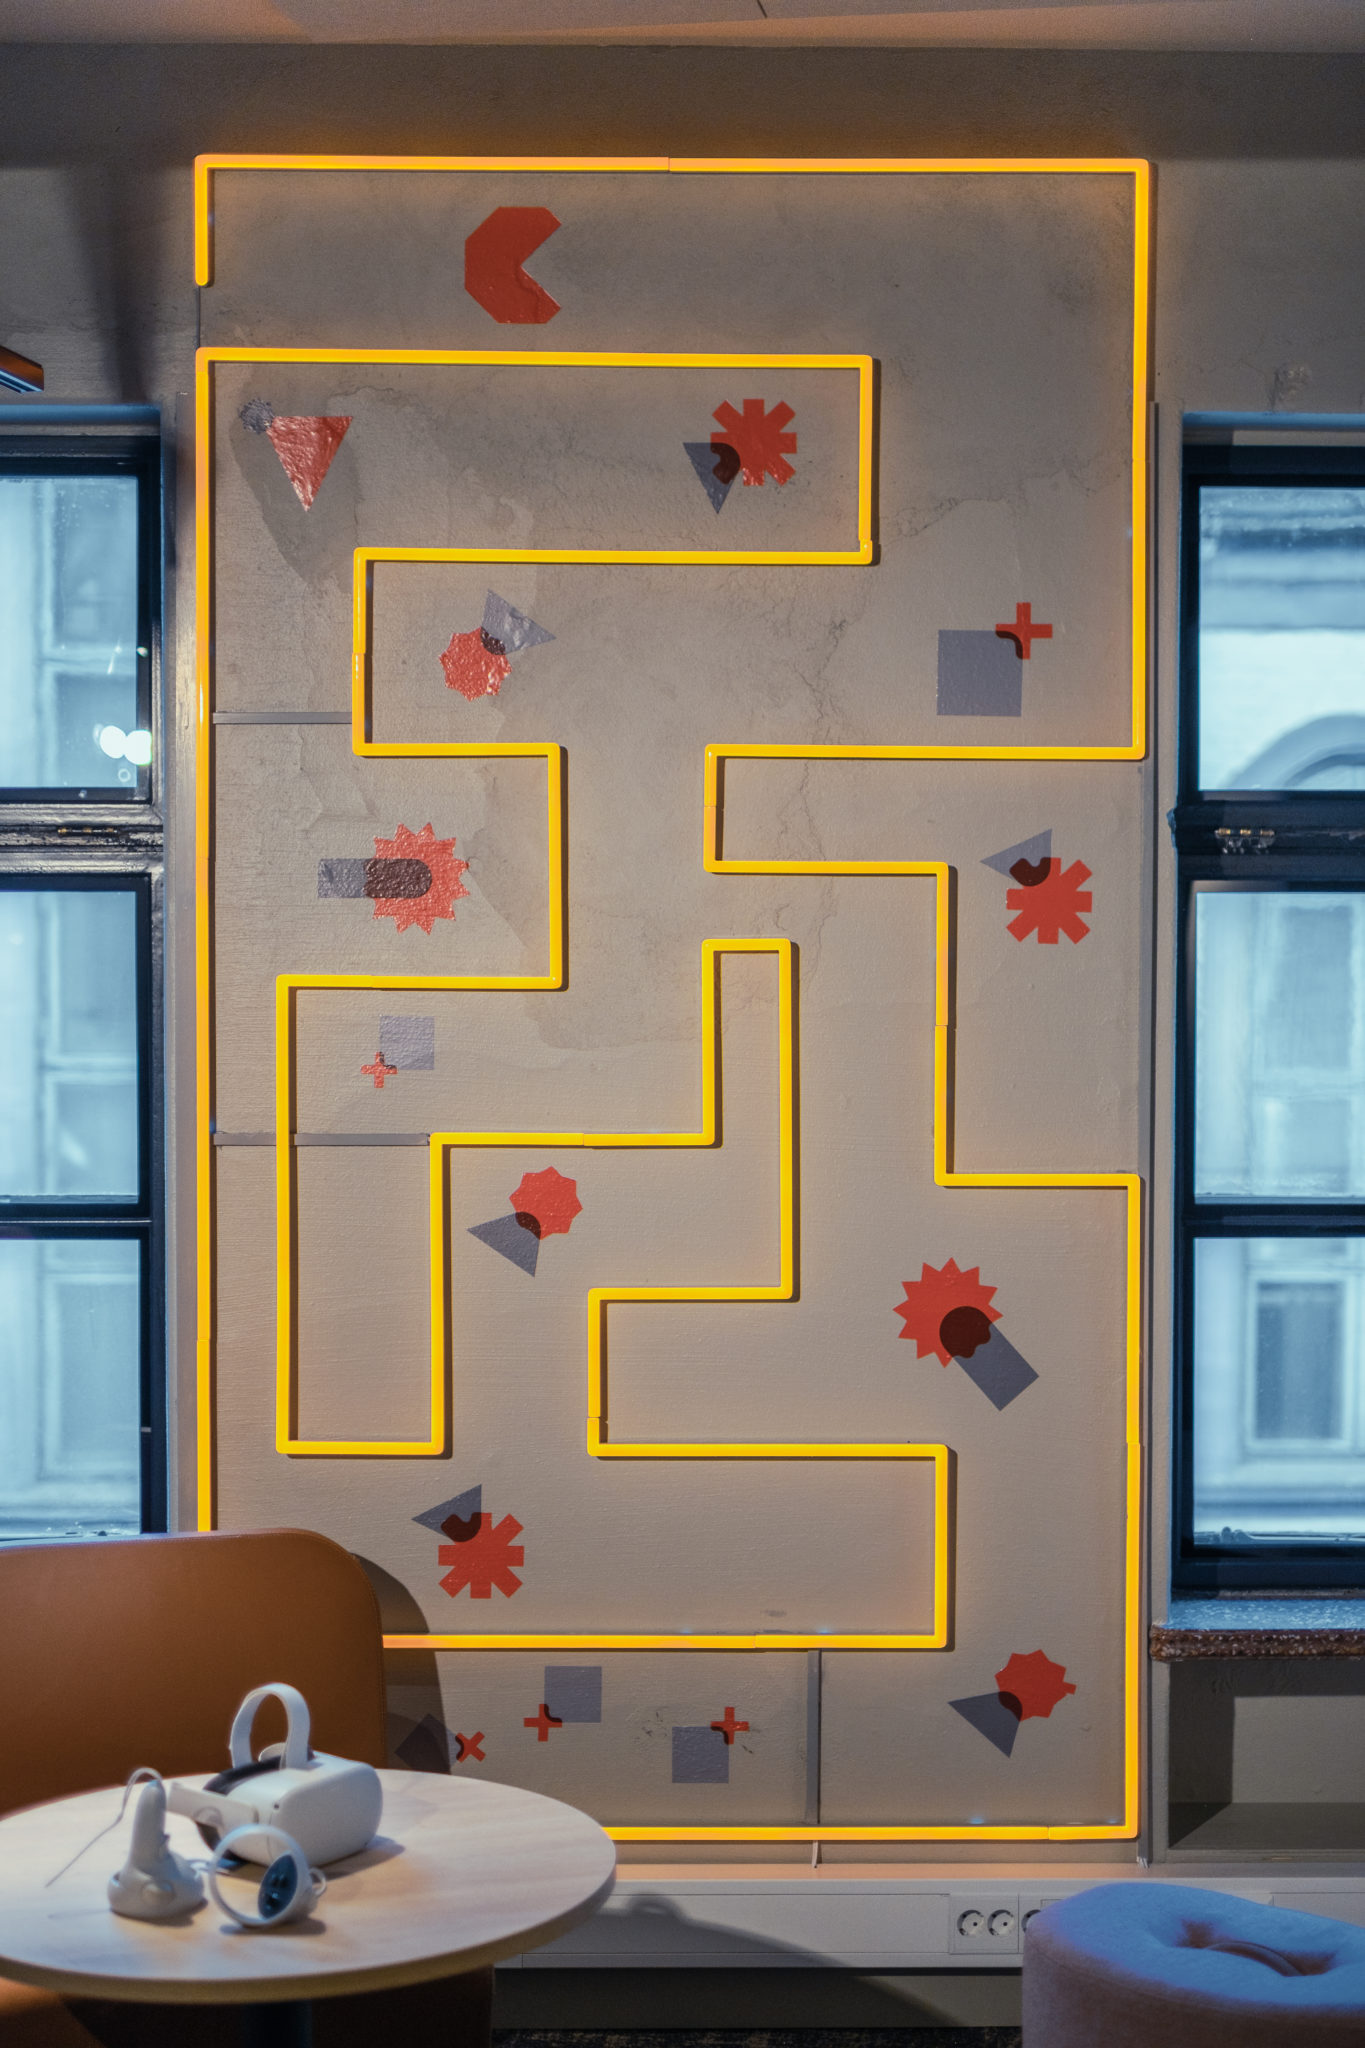 Foto av dekor i kontoret til dRofus, som viser grafiske former og neonlys. Det kan minne om spillet pacman.